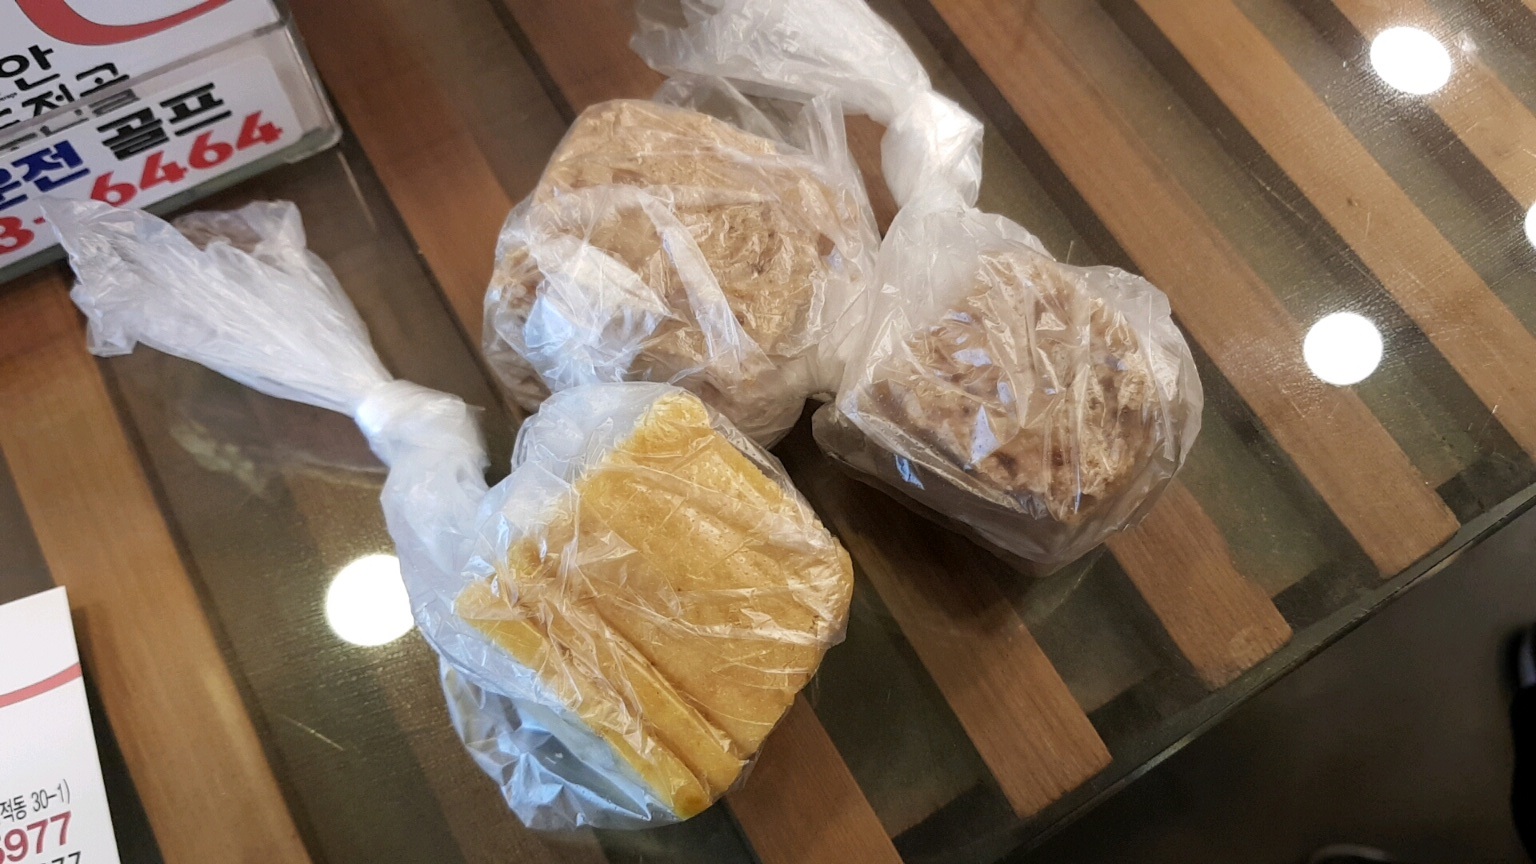 성남시 만두전골 맛집 디안 만두전골 - 서비스 옥수수빵 & 보리빵